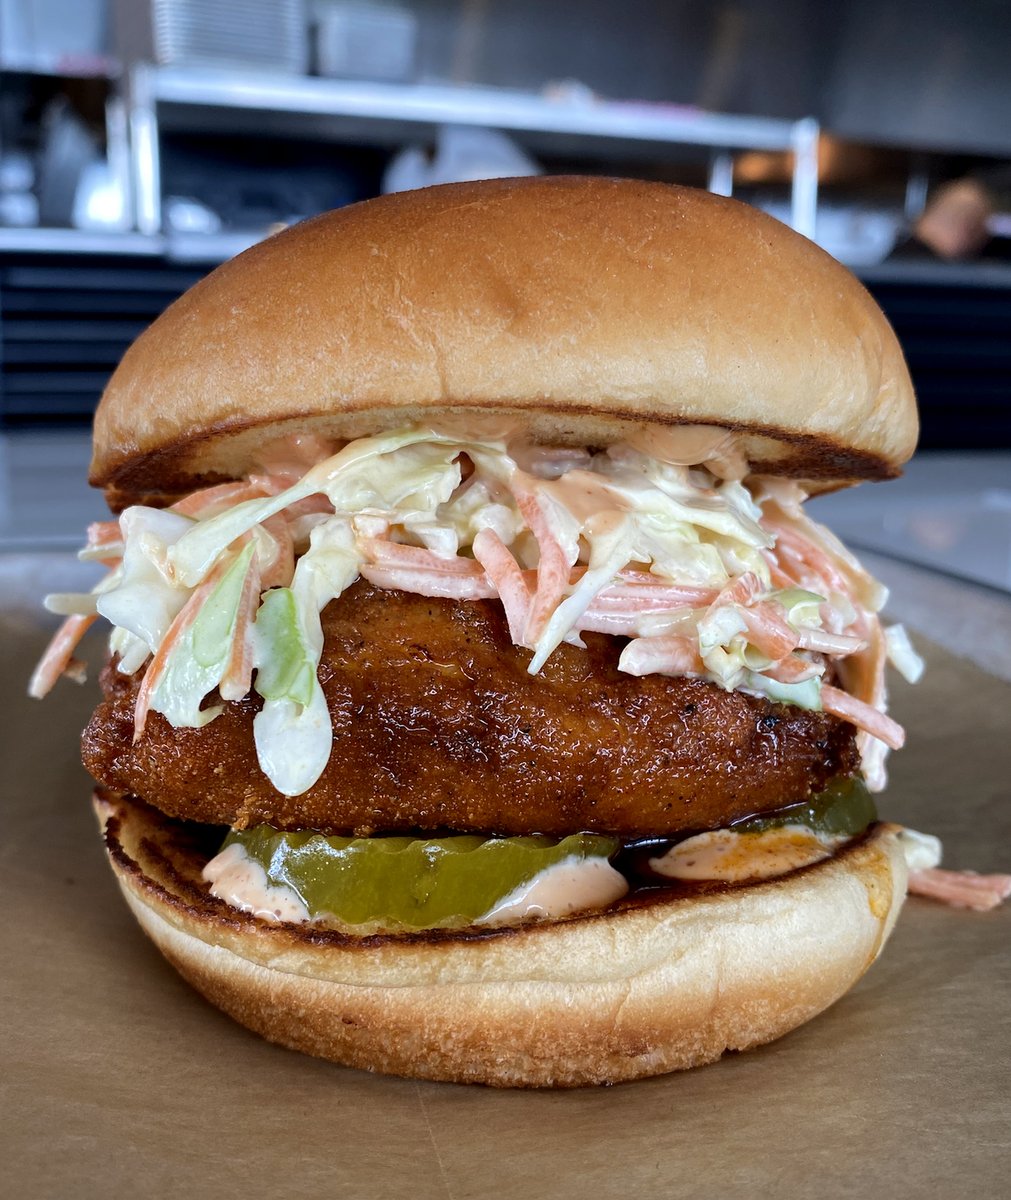 Manhattan Uittrekken Contractie PINCHO on Twitter: "Say hello to our new Miami Hot Chicken Sandwich!  #NashvilleHotChicken #SoGood https://t.co/XOaDHQ1SUC" / Twitter